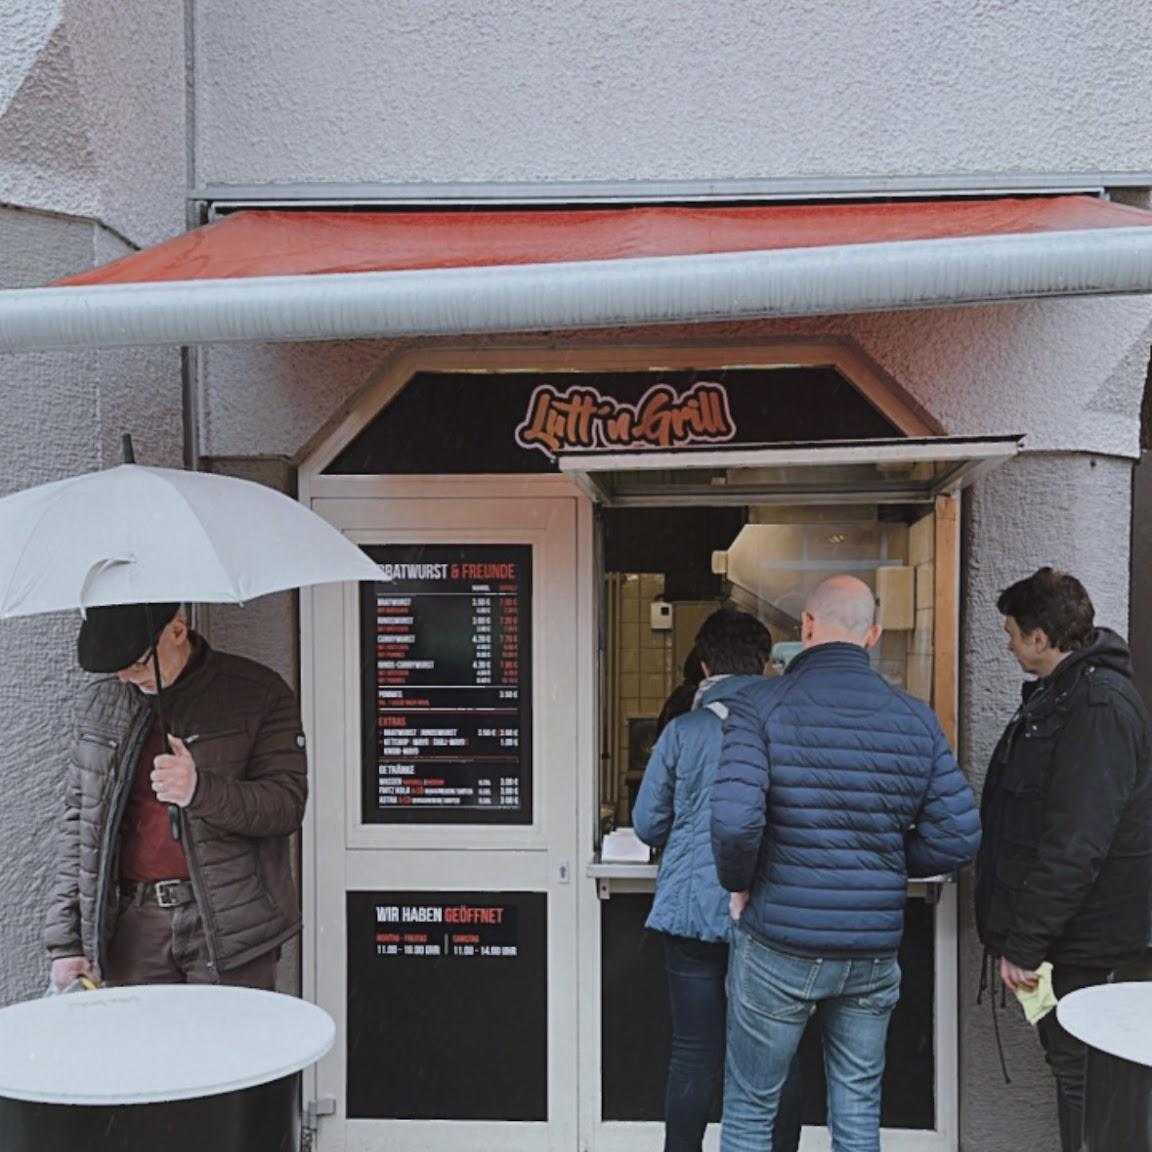 Restaurant "Lütt